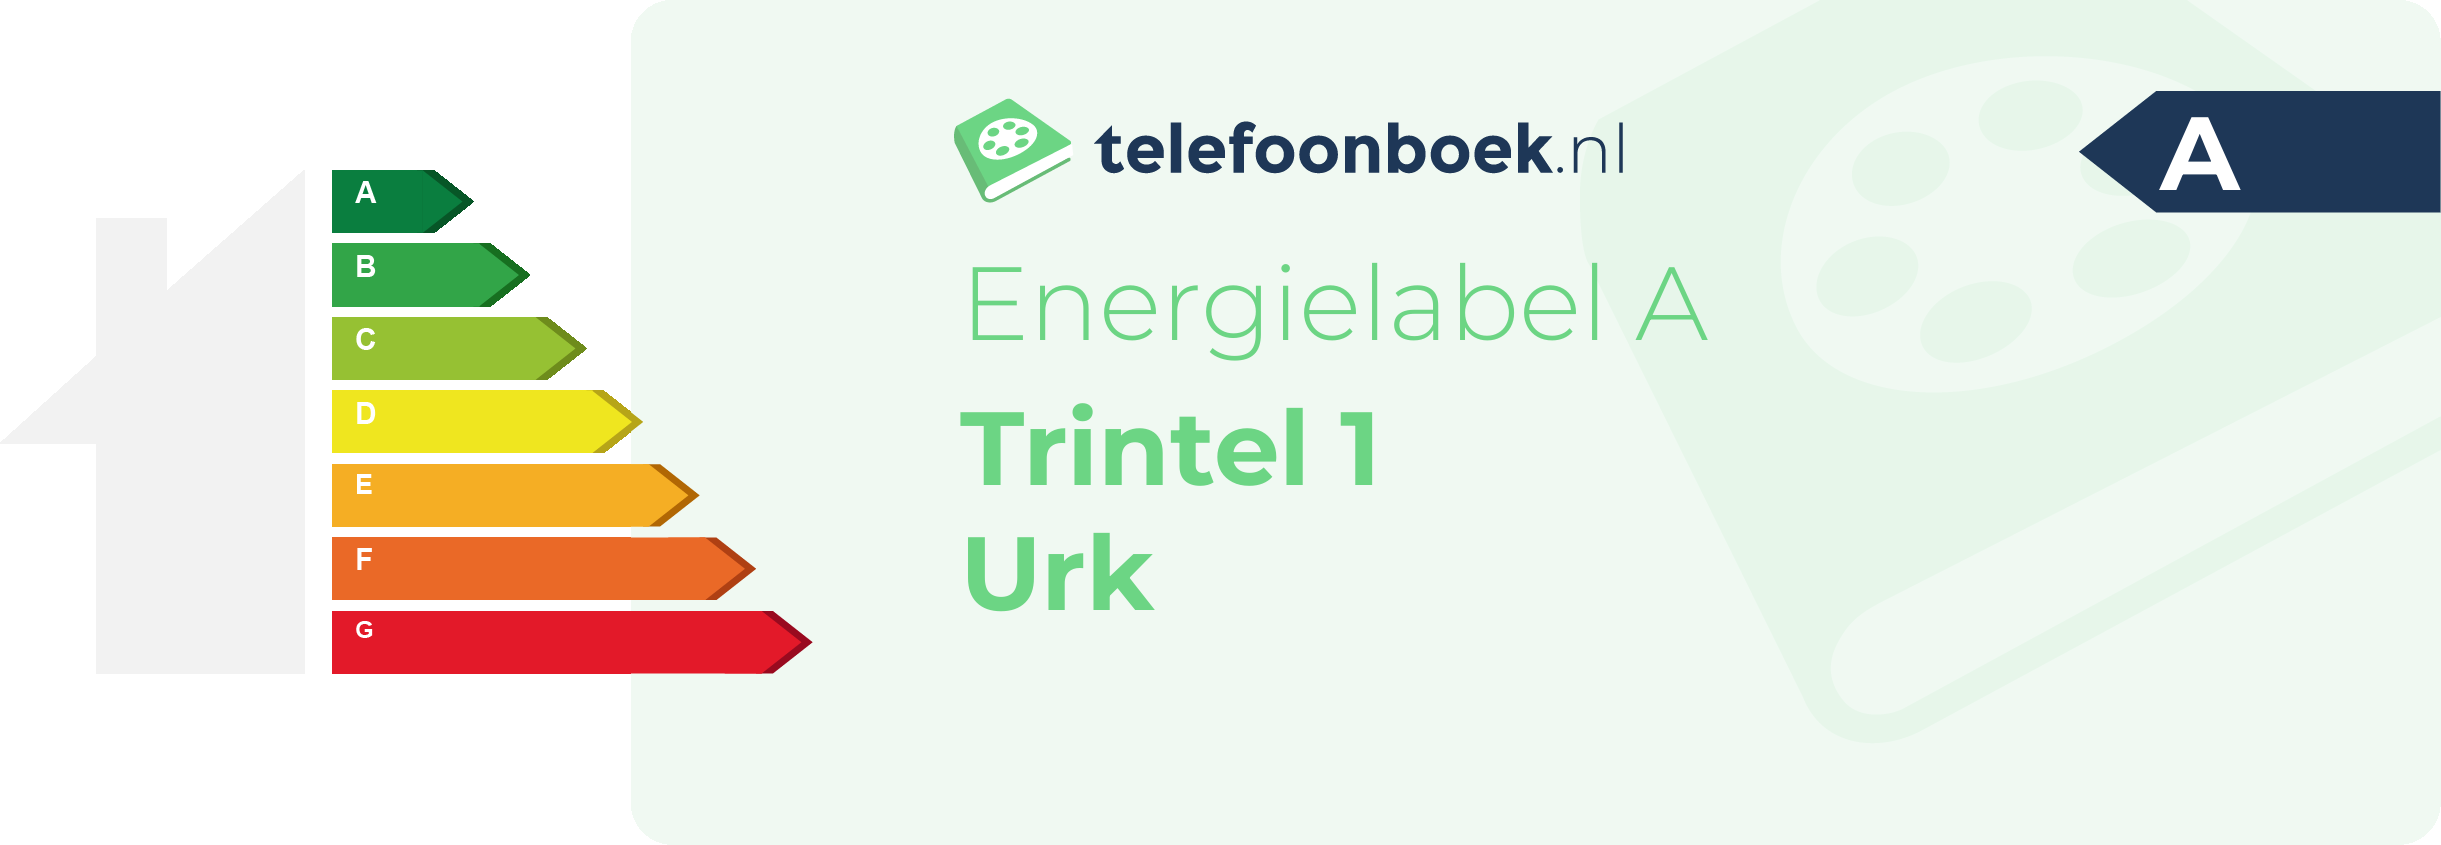 Energielabel Trintel 1 Urk